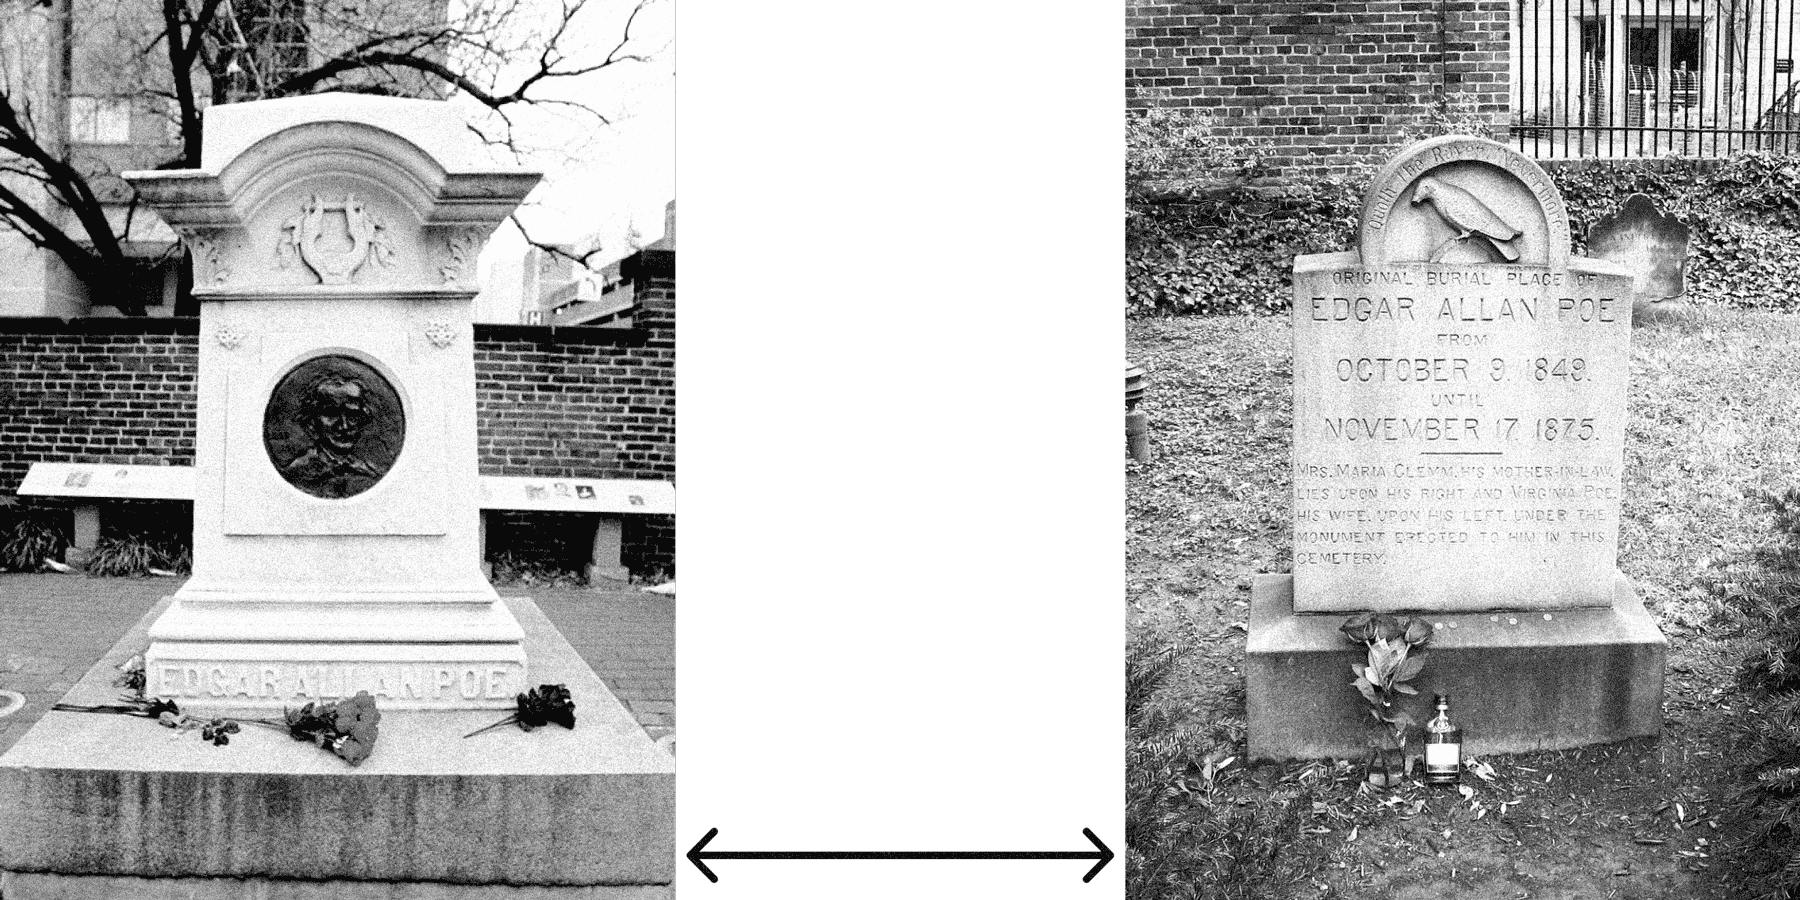 Слева — нынешняя могила Эдгара Аллана По на кладбище в Балтиморе, США. Справа — кенотаф на том месте, где могила По была изначально, до того, как останки писателя перенесли на новое место. Источники: alearned.com, wikimedia.org